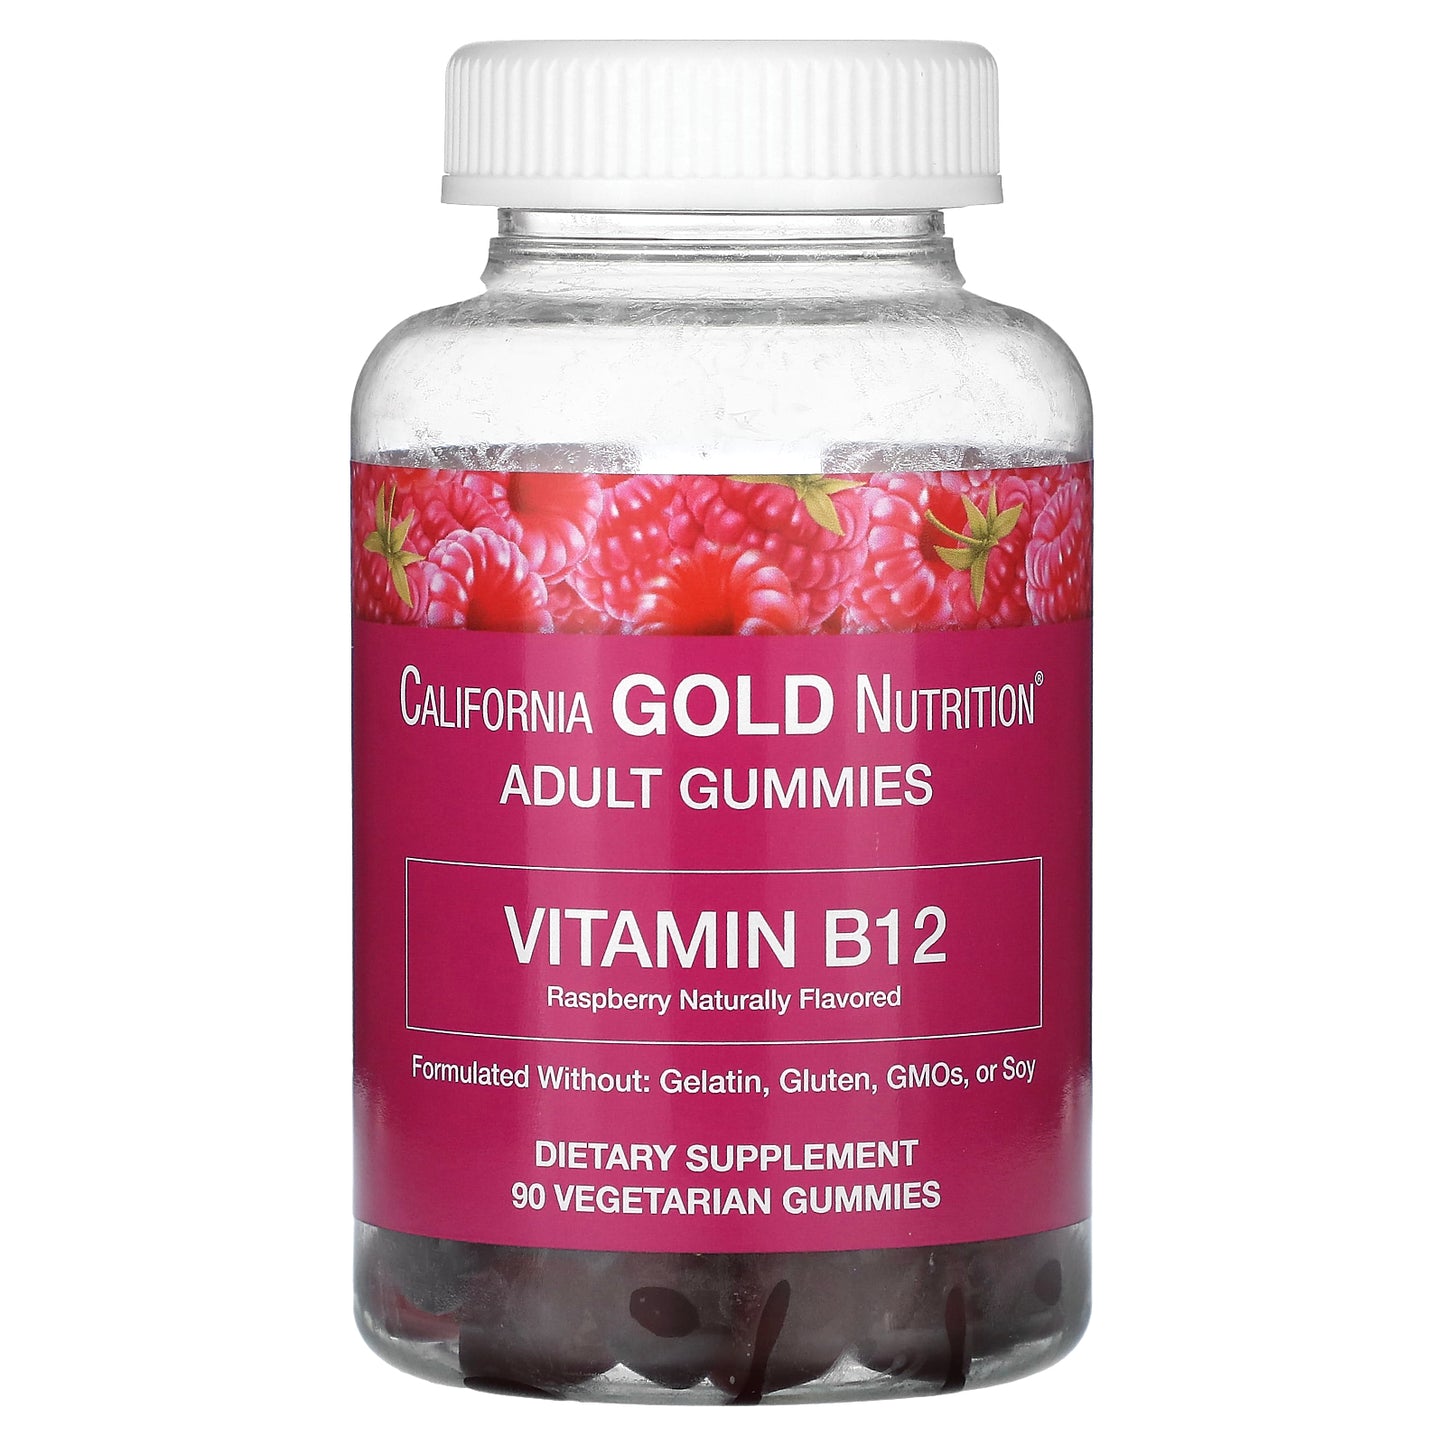 California Gold Nutrition, Vitamin B12 Gummies, Natural Raspberry Flavor, Gelatin Free, 3,000 mcg, 90 Gummies (1500 mcg per Gummy)